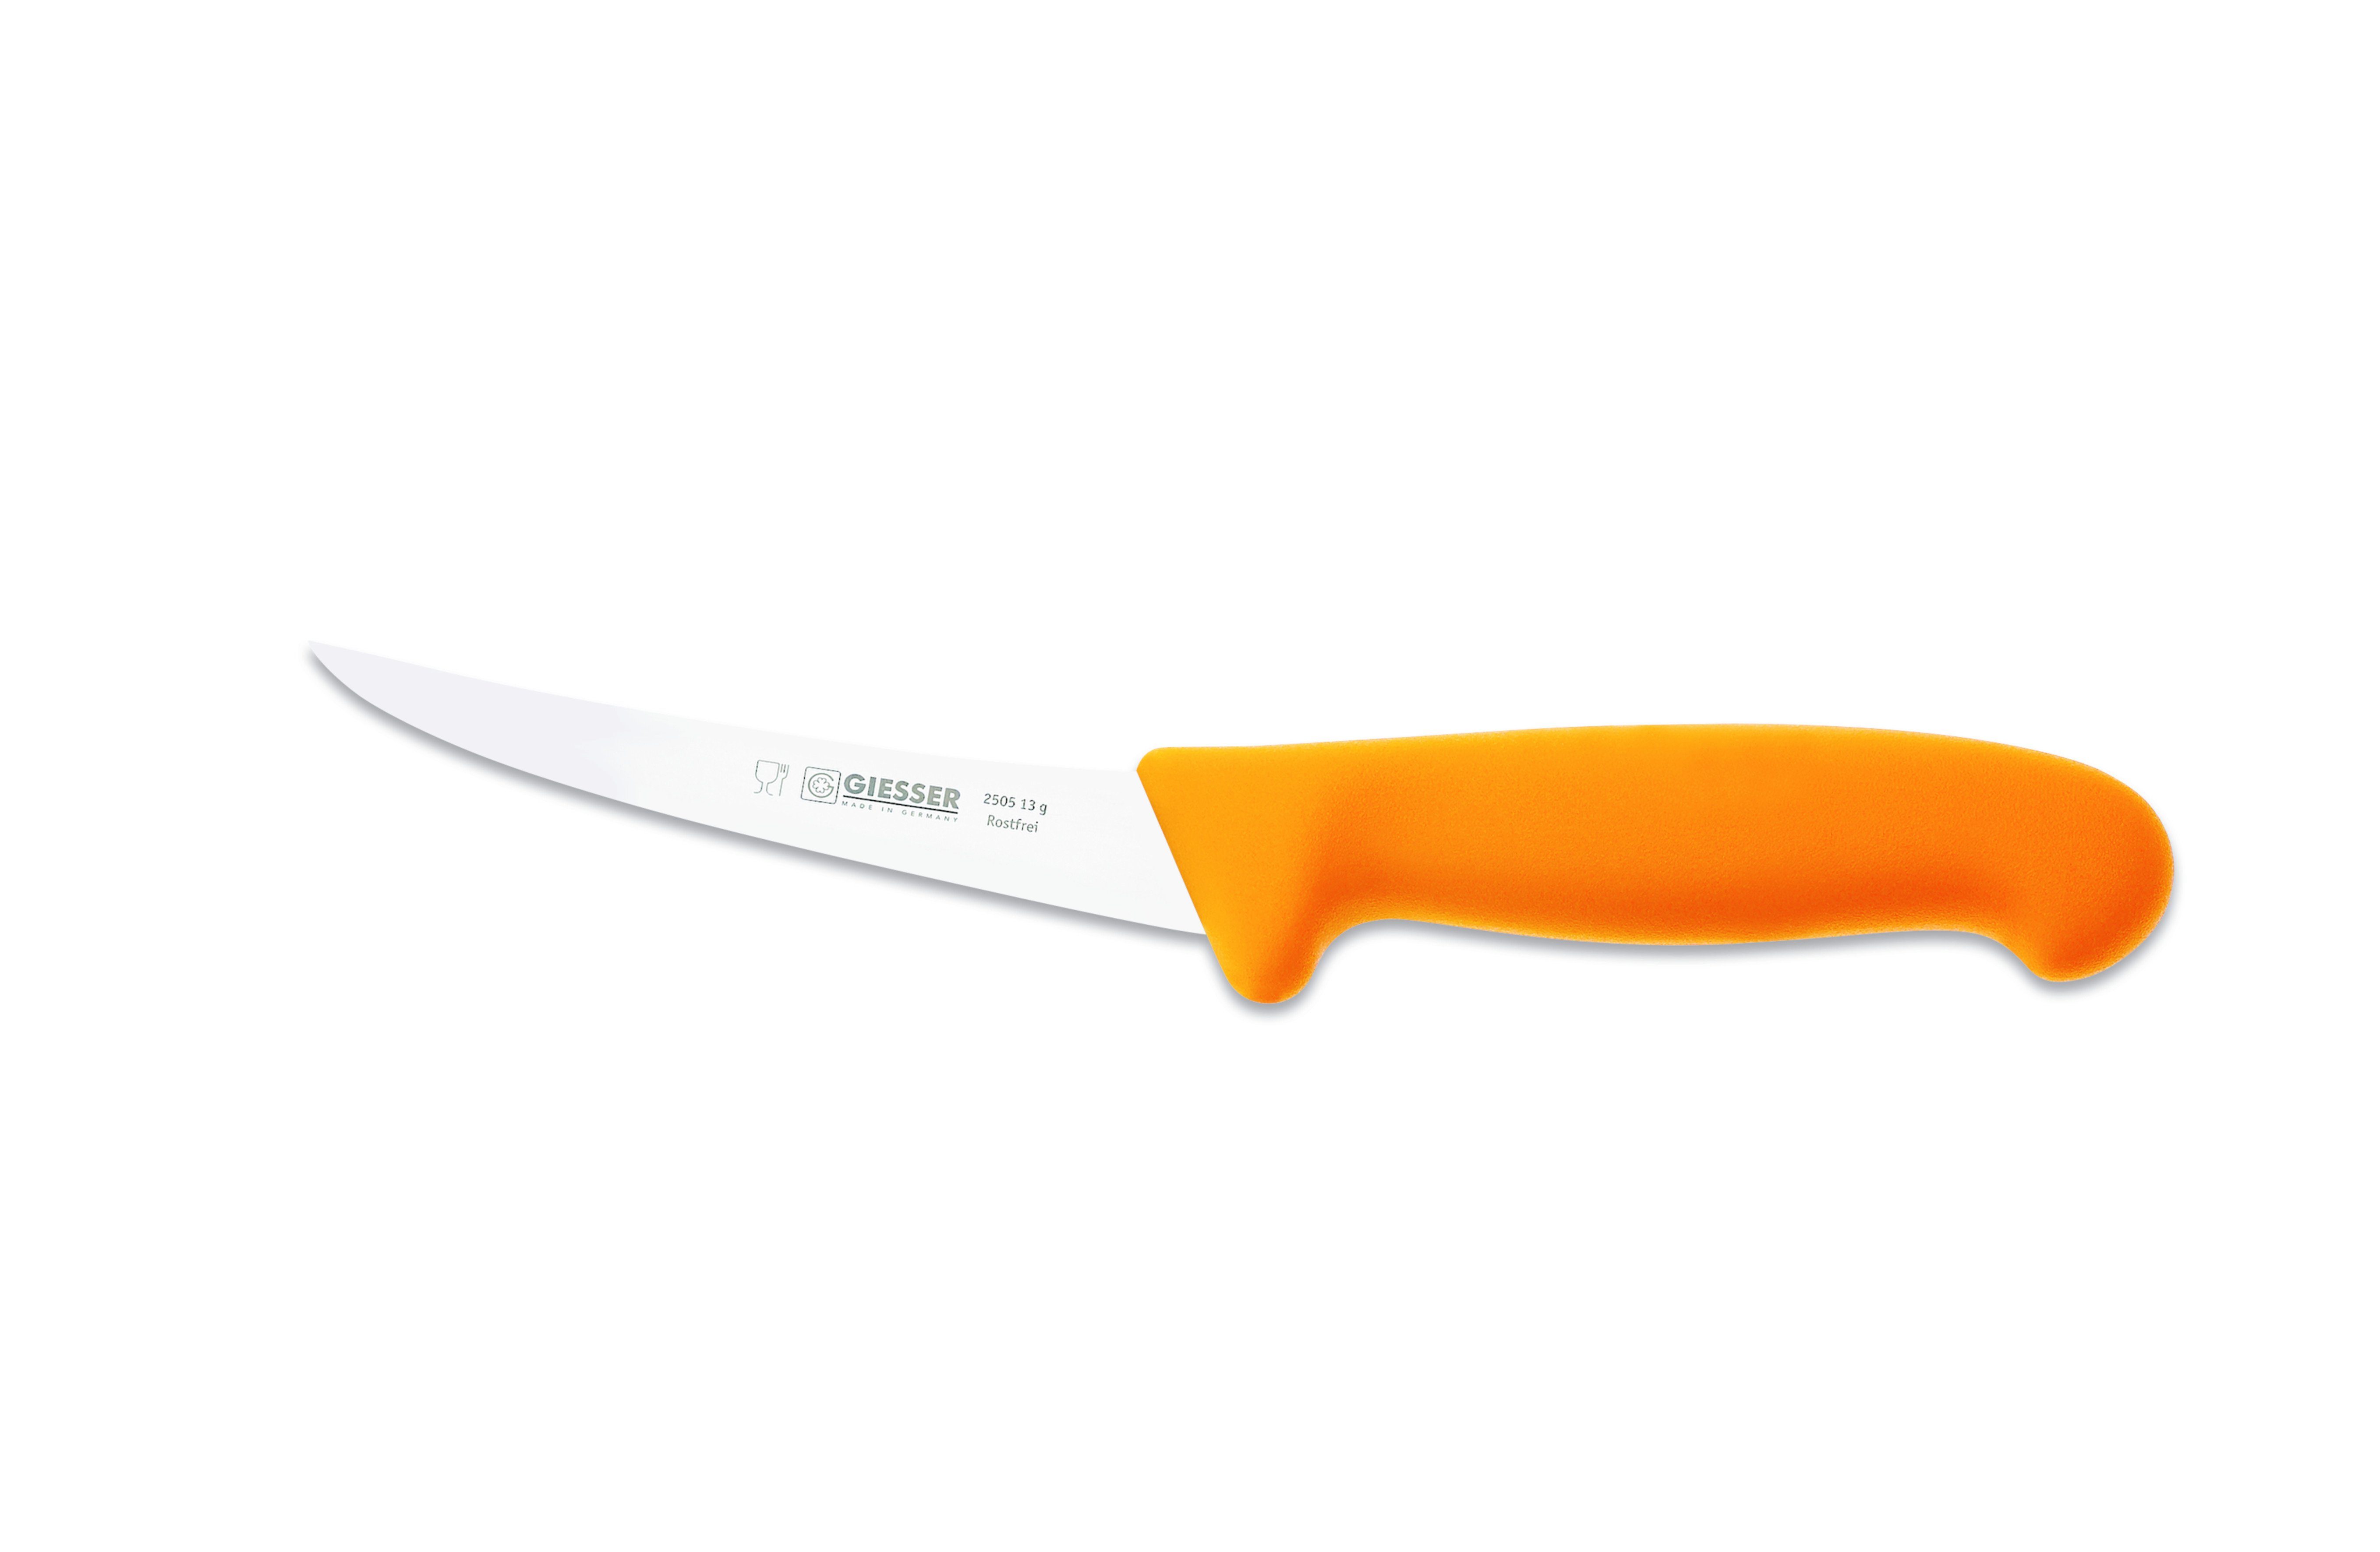 Giesser Messer flexibel, 13-17, sehr 2505 Gelb Ausbeinmesser stark flexibel, Fleischermesser Klingenstärke